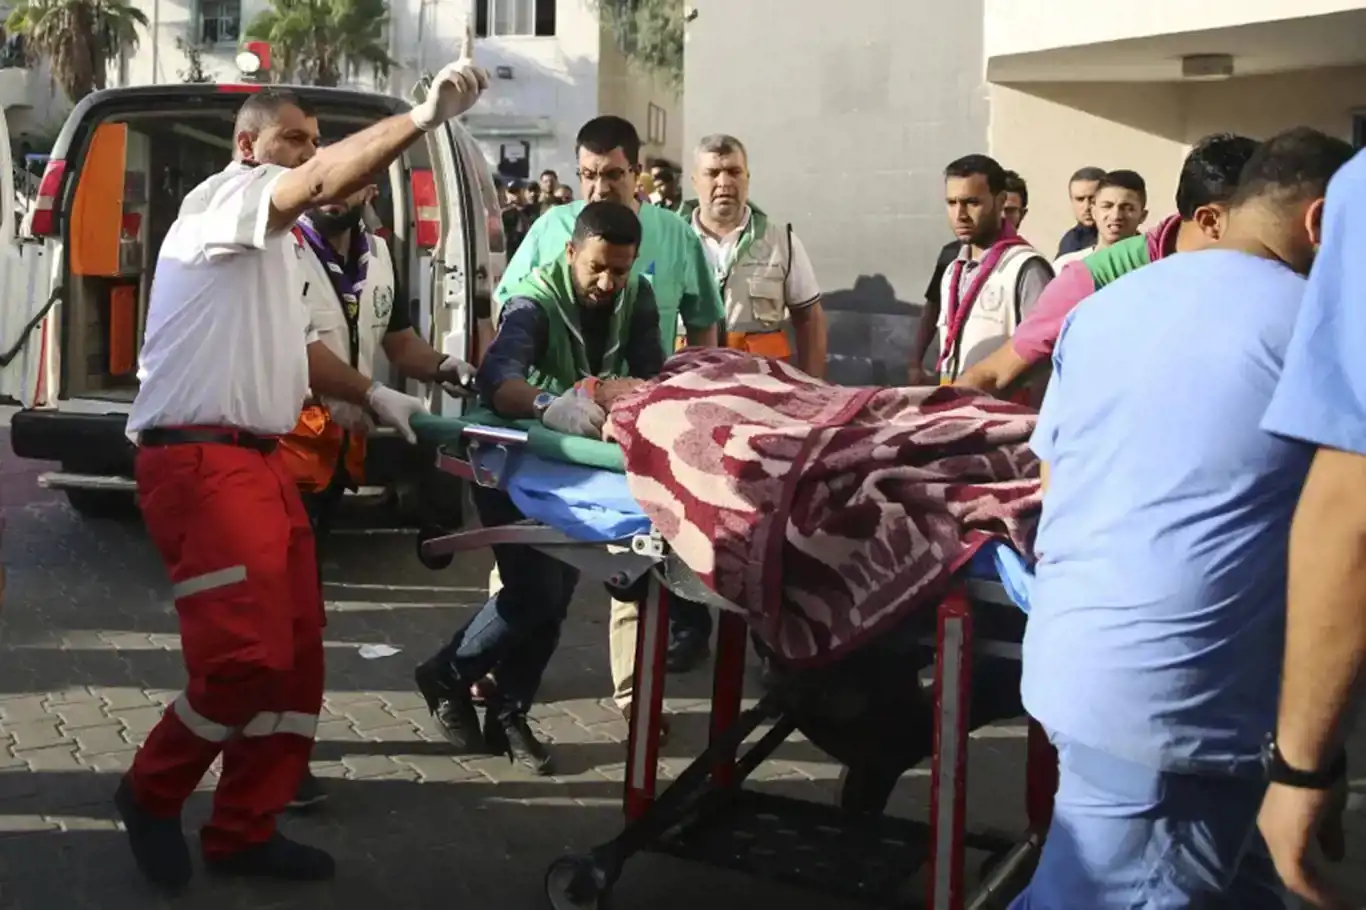 Gazze'de sağlık sistemi tamamen çöktü